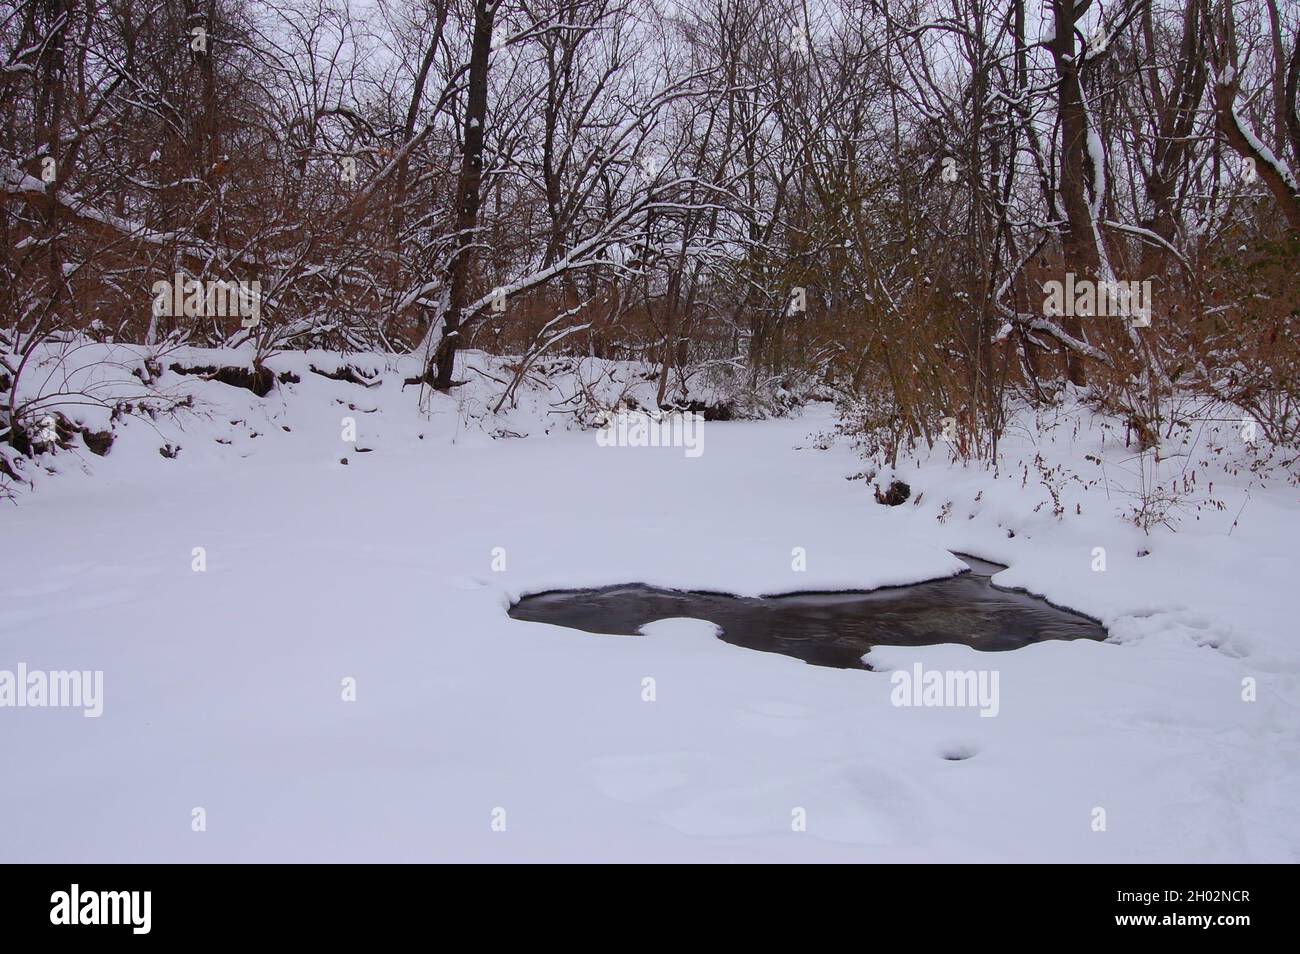 Paisaje invernal con nieve, pequeño lago congelado y árboles sin hojas, con espacio de copia, concepto de llegada invernal Foto de stock